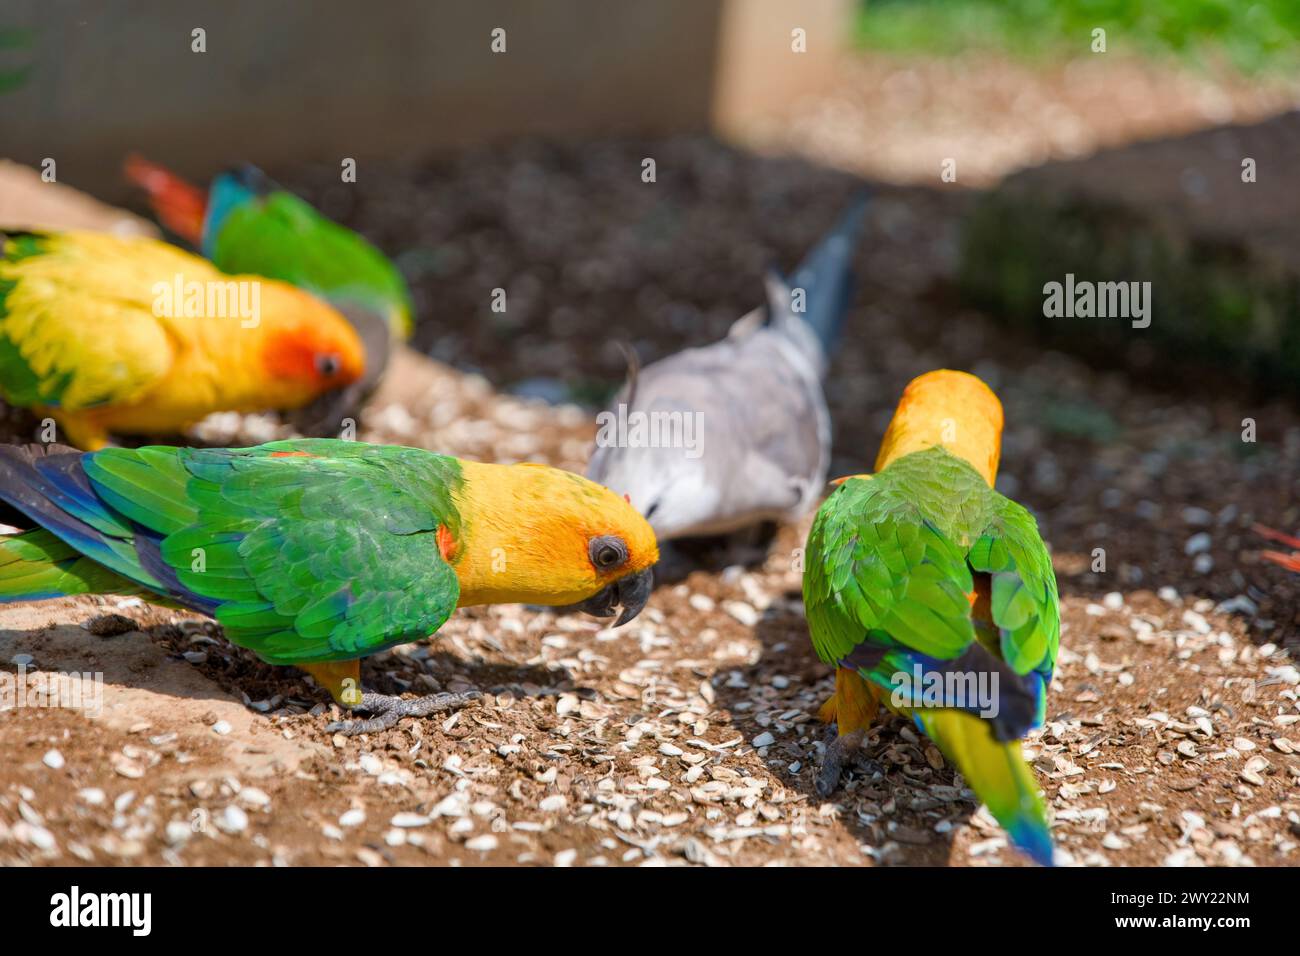 Eine lebhafte Szene mit bunten Papageien, die eine köstliche Mahlzeit auf dem Boden genießen. Stockfoto